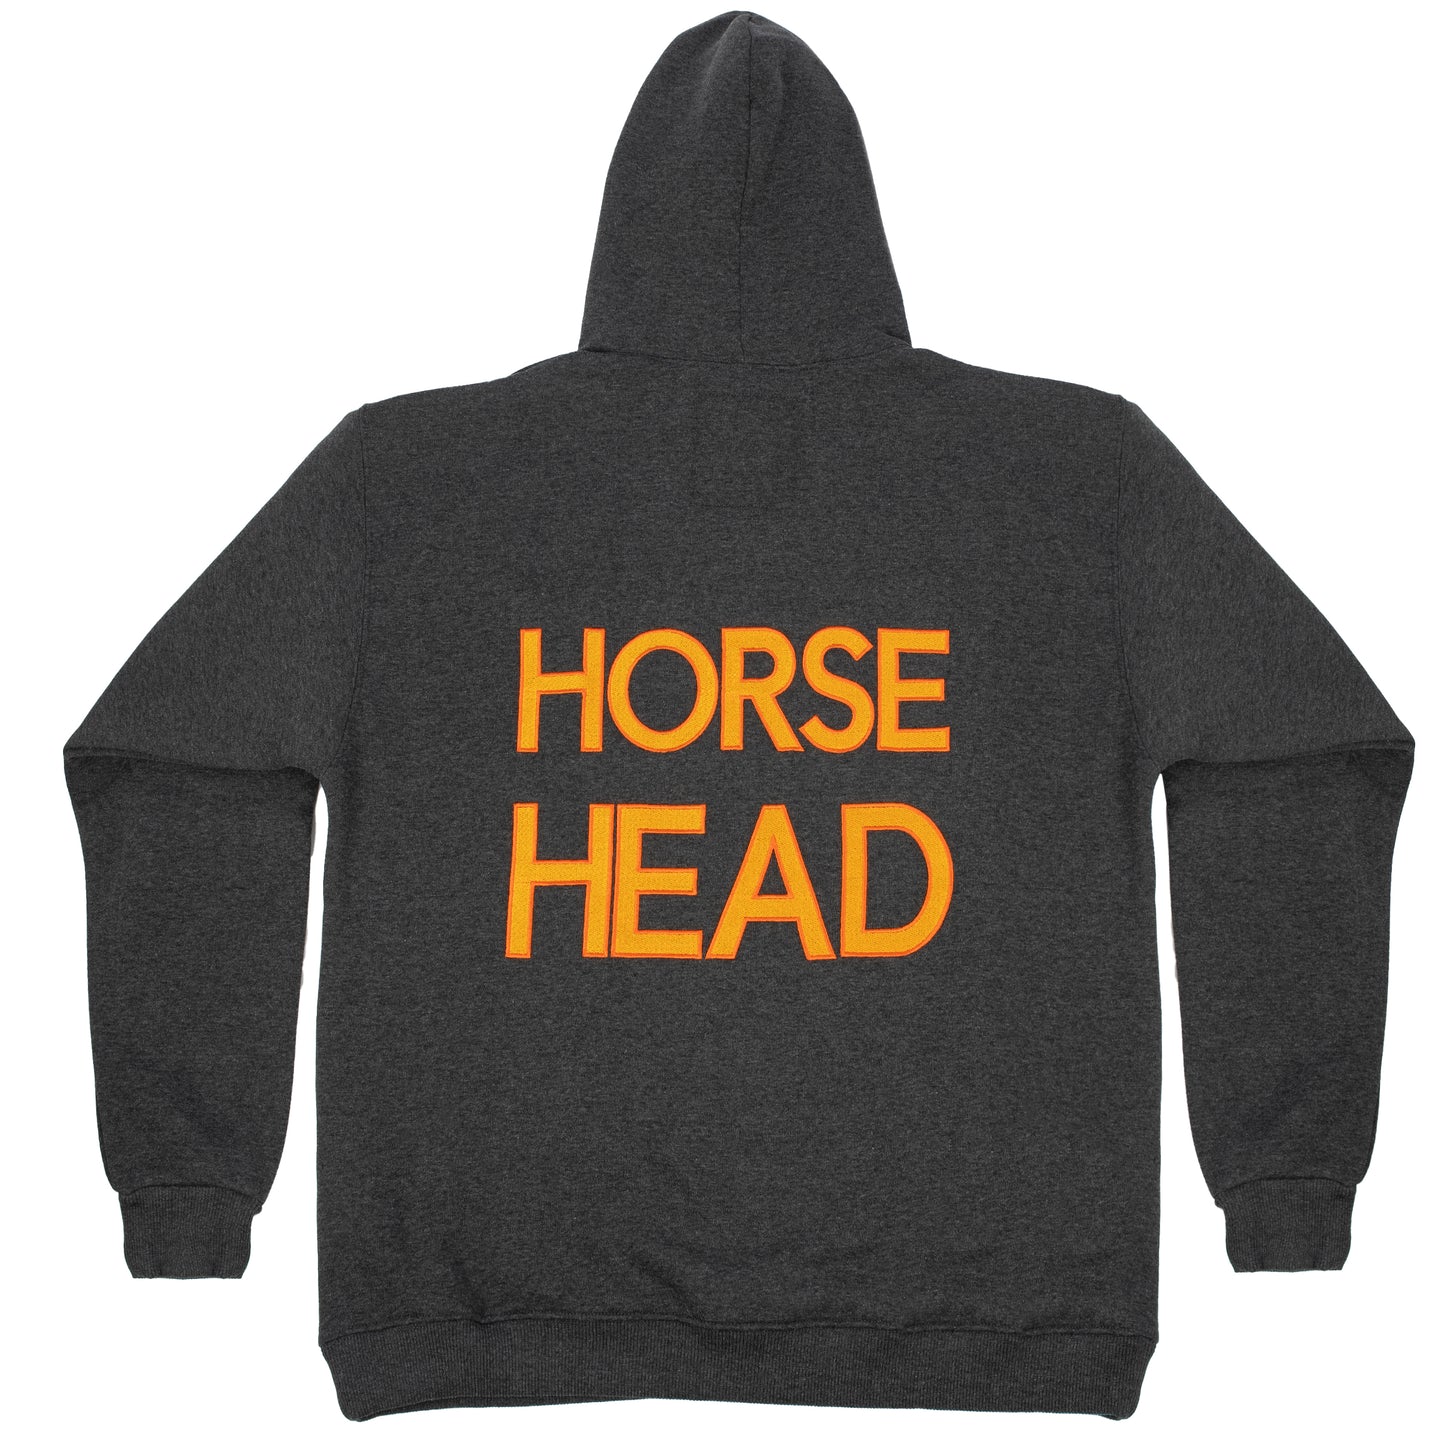 HORSE HEAD HOODIE